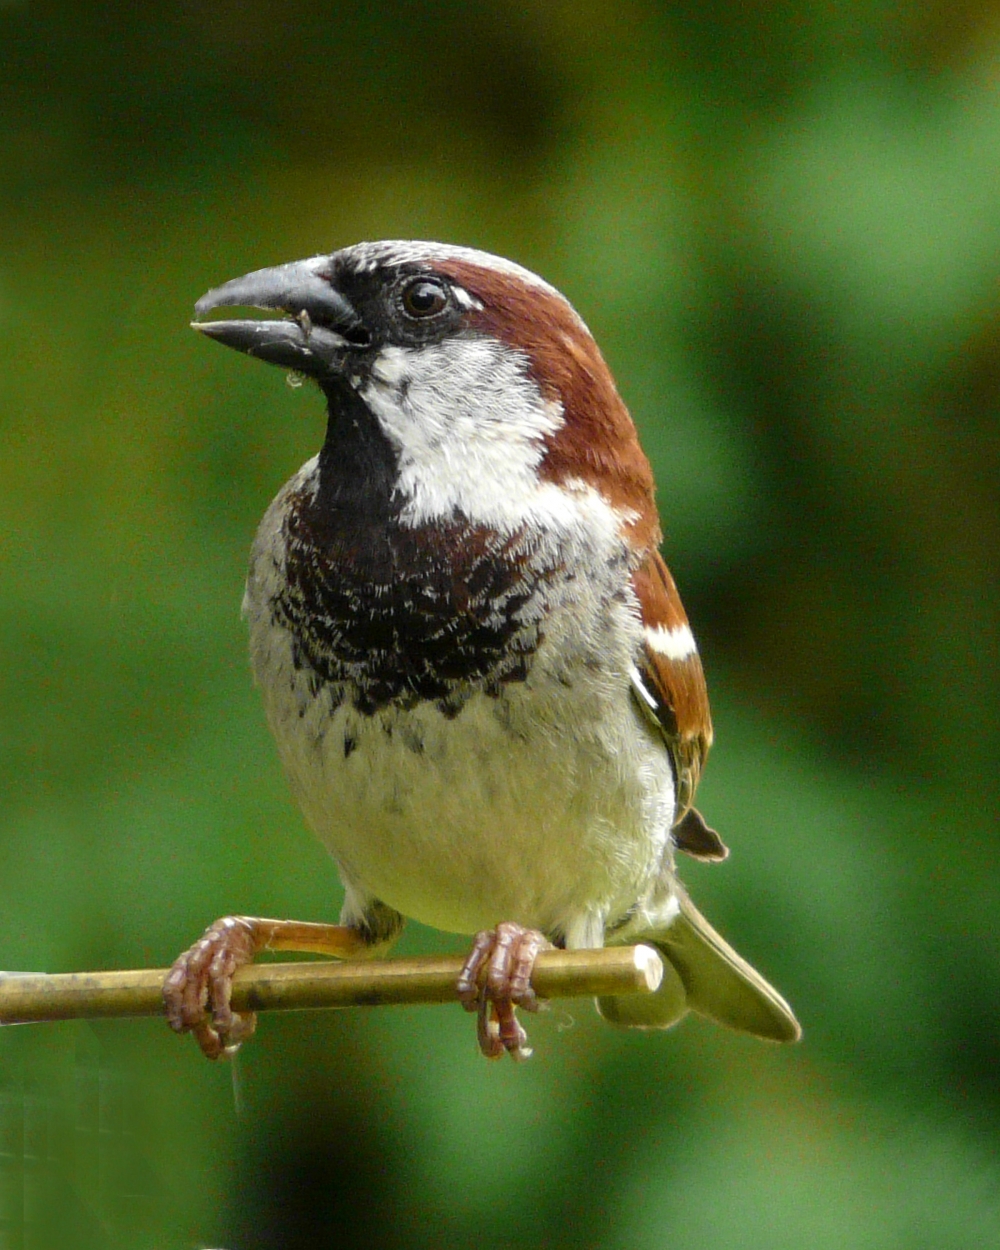 Cock sparrow